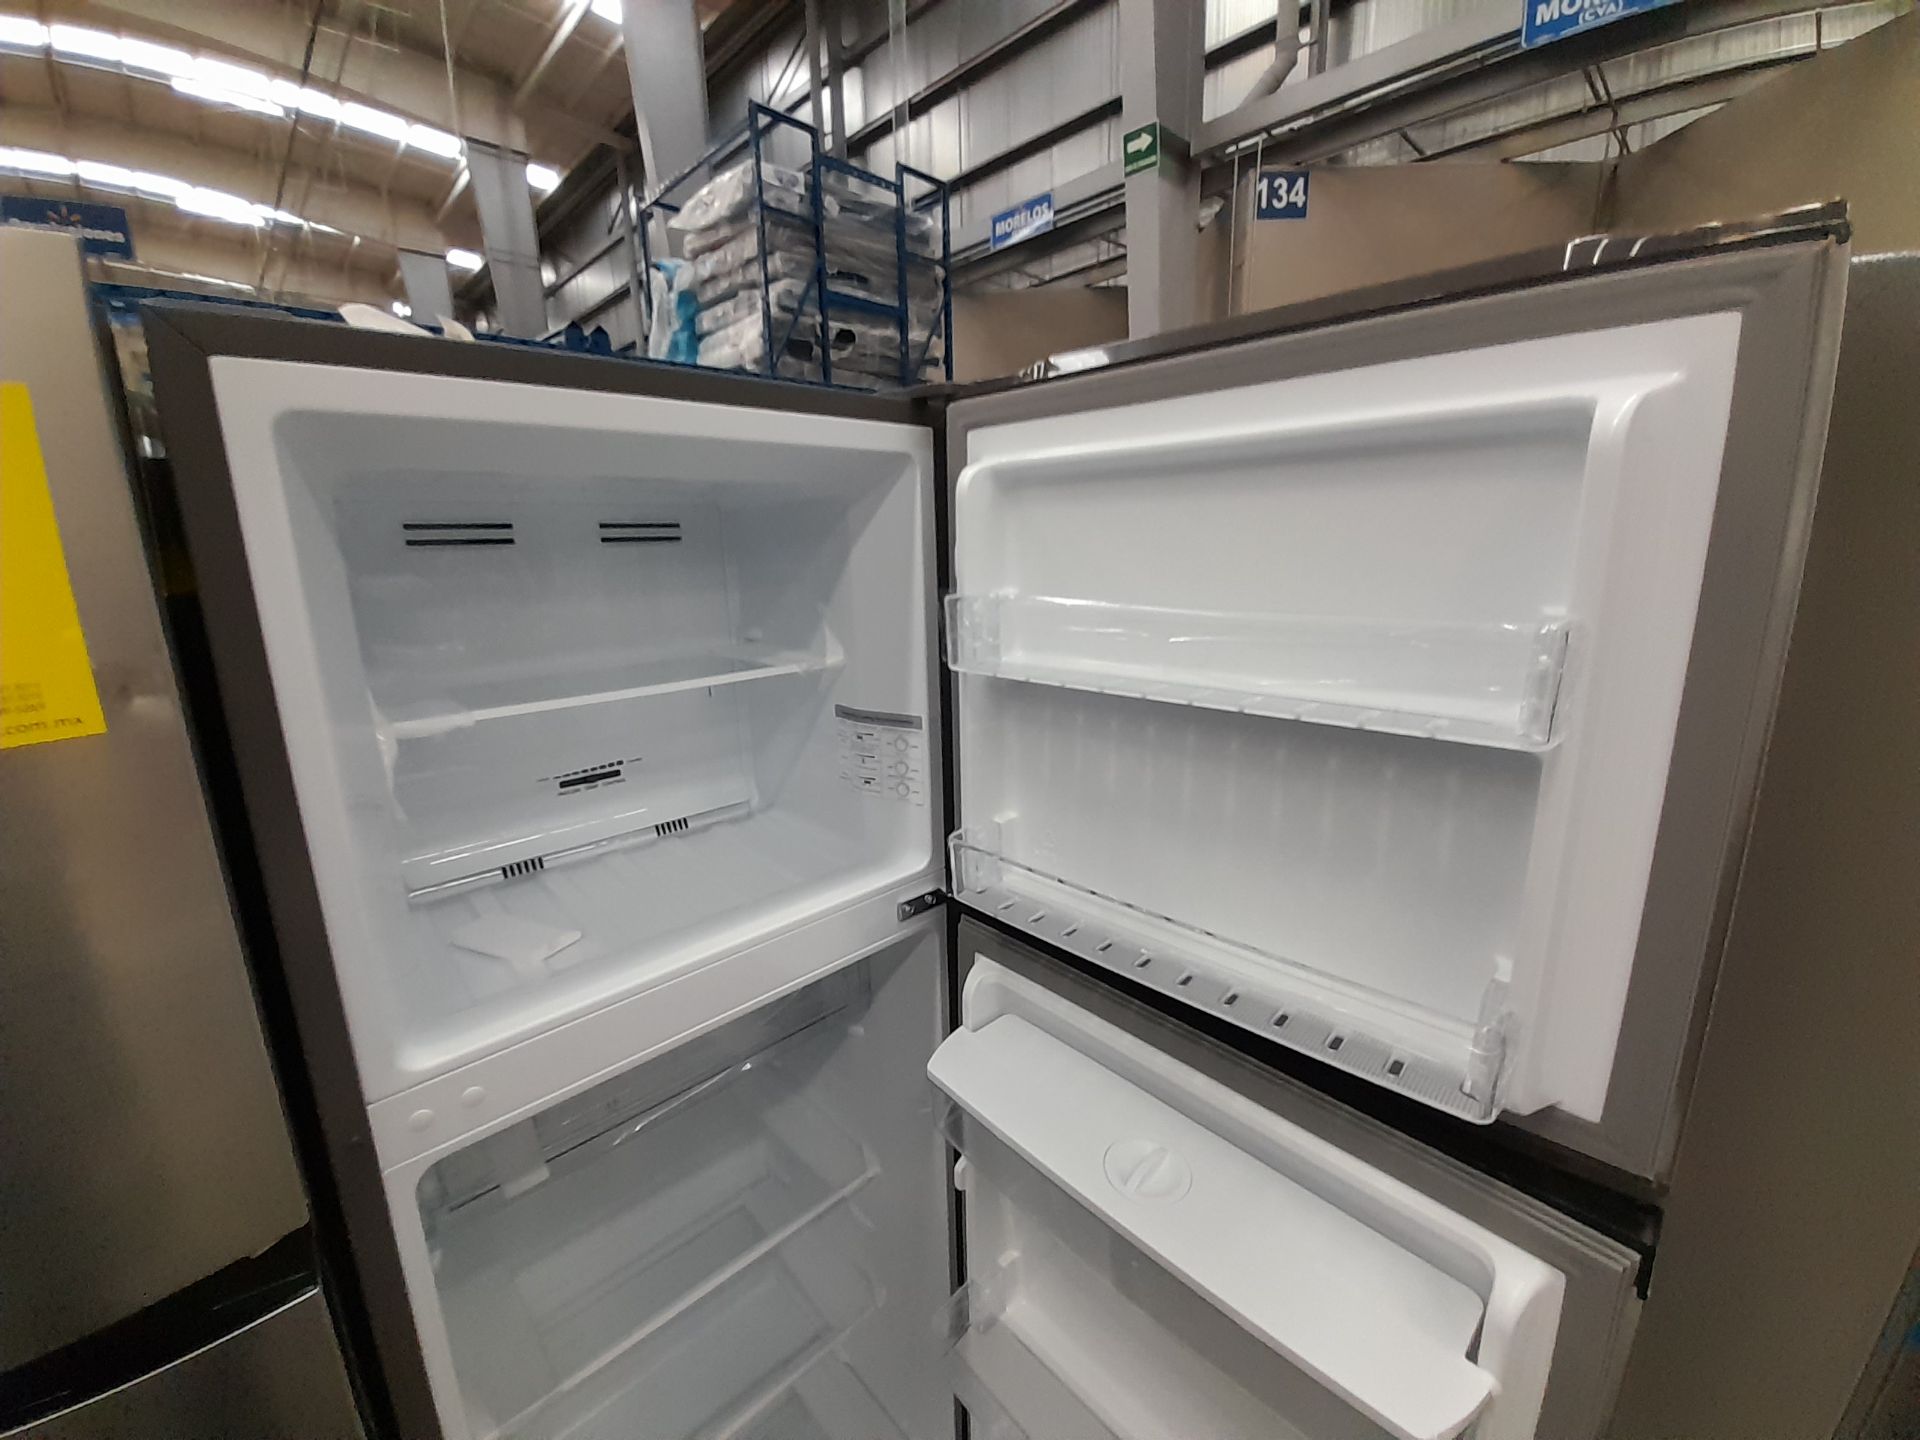 Lote de 2 refrigeradores contiene: 1 refrigerador con dispensador de agua Marca HISENSE, Modelo - Image 4 of 8